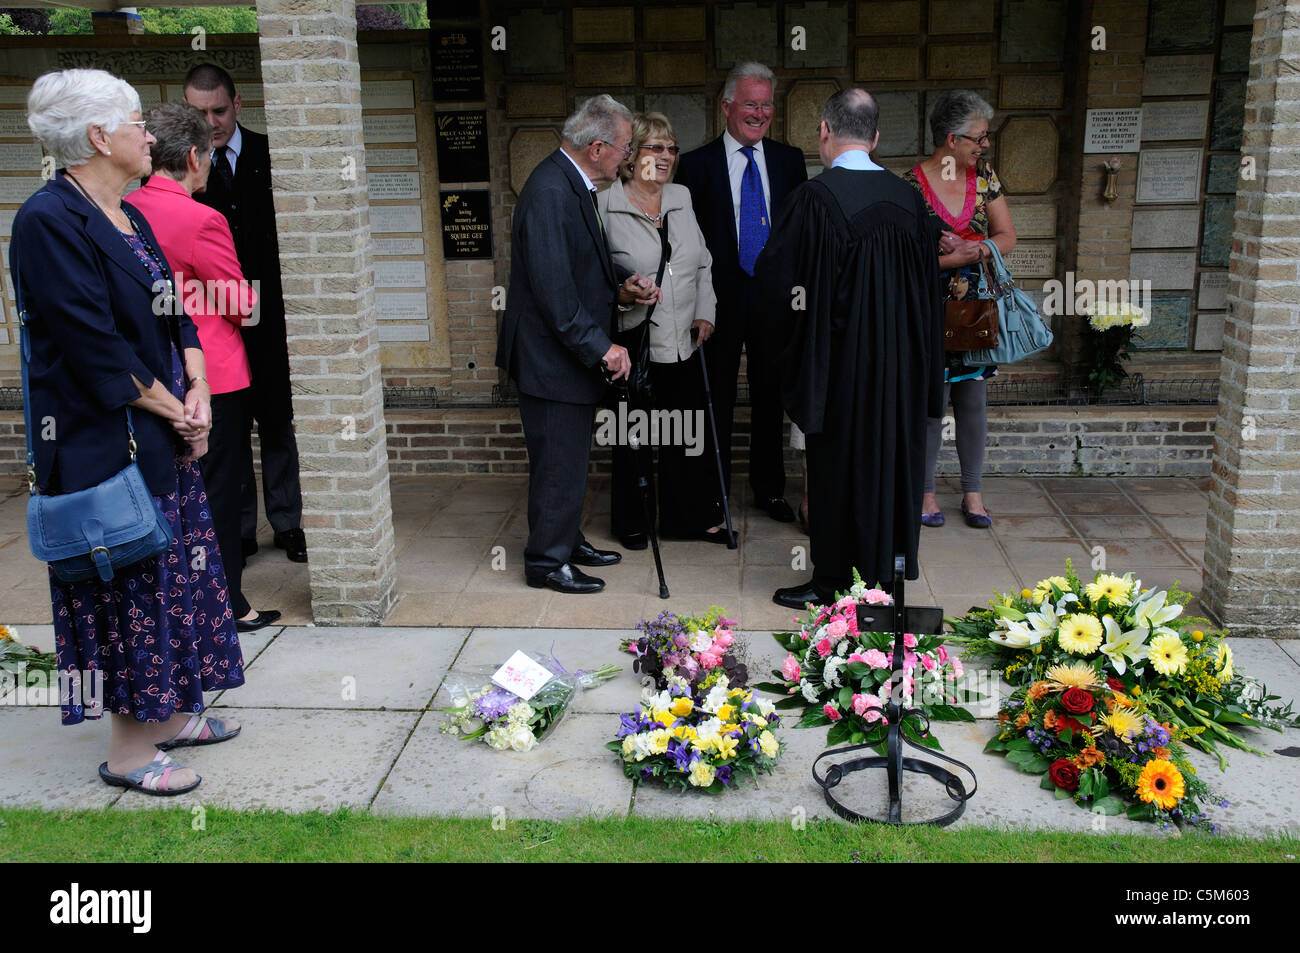 Persone in lutto e sacerdote a un funerale di parlare e ammirando fiori e ghirlande a un crematorio Foto Stock